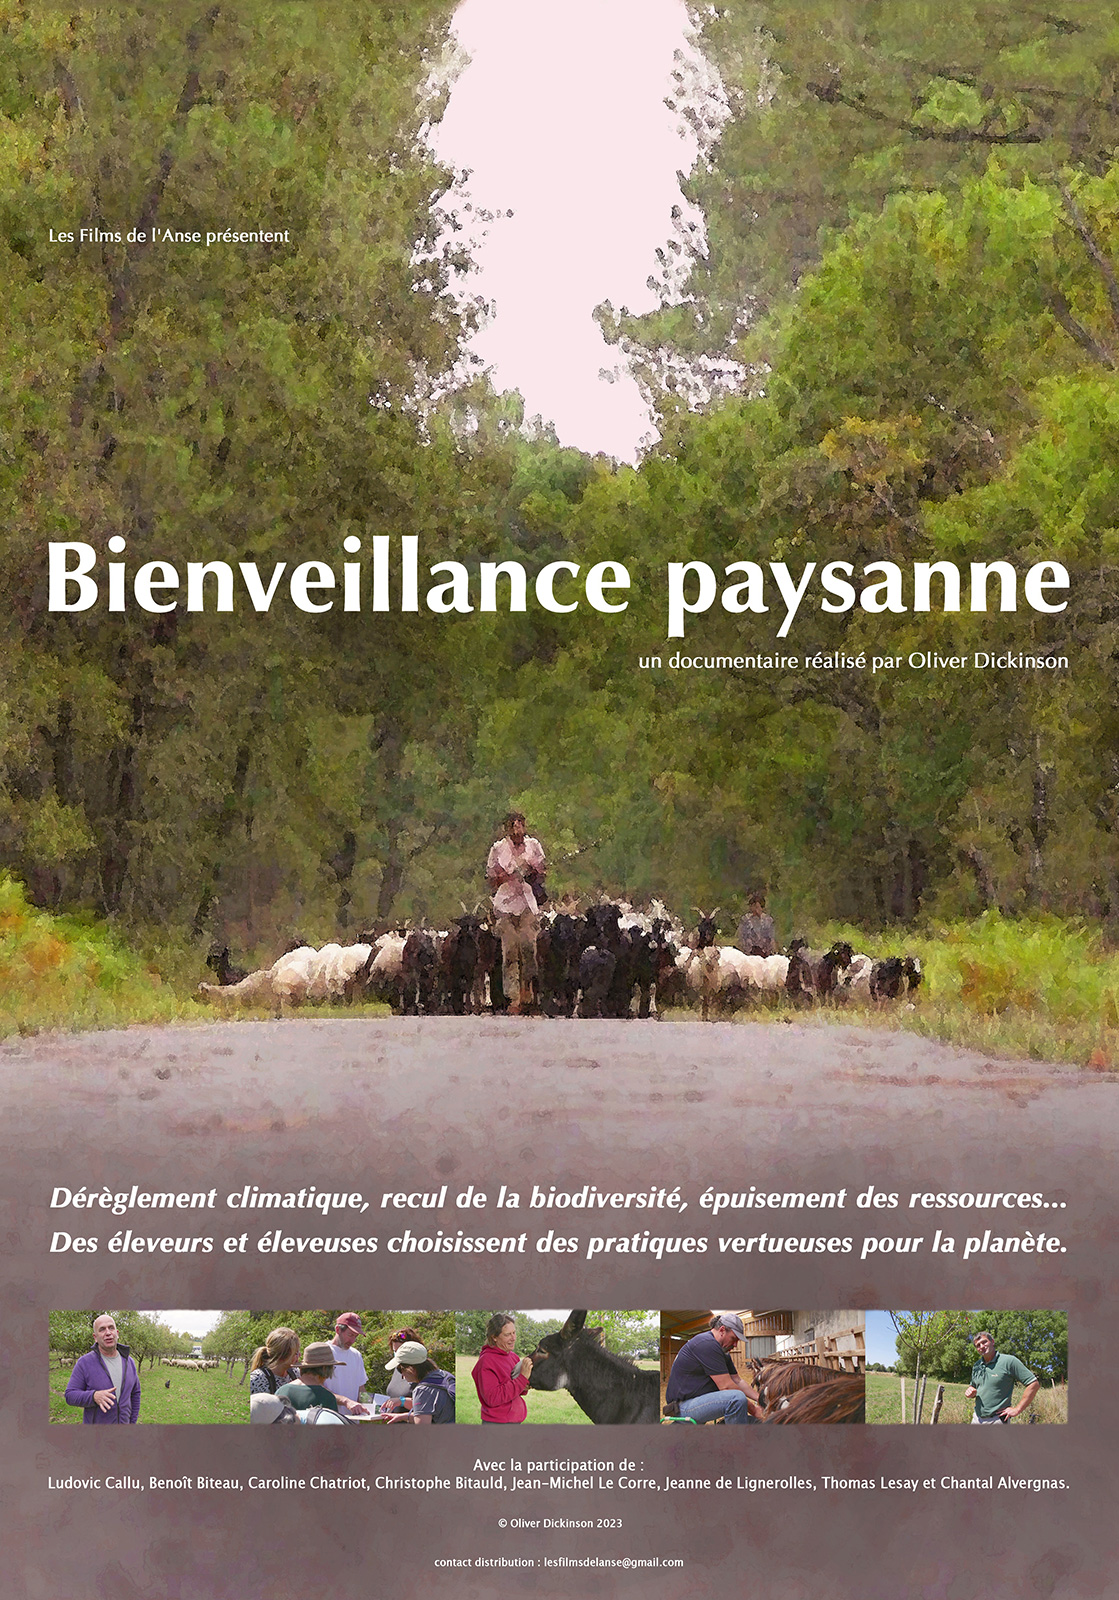 Projection de "Bienveillance paysanne" - Rencontre avec le réalisateur Olivier Dickinson